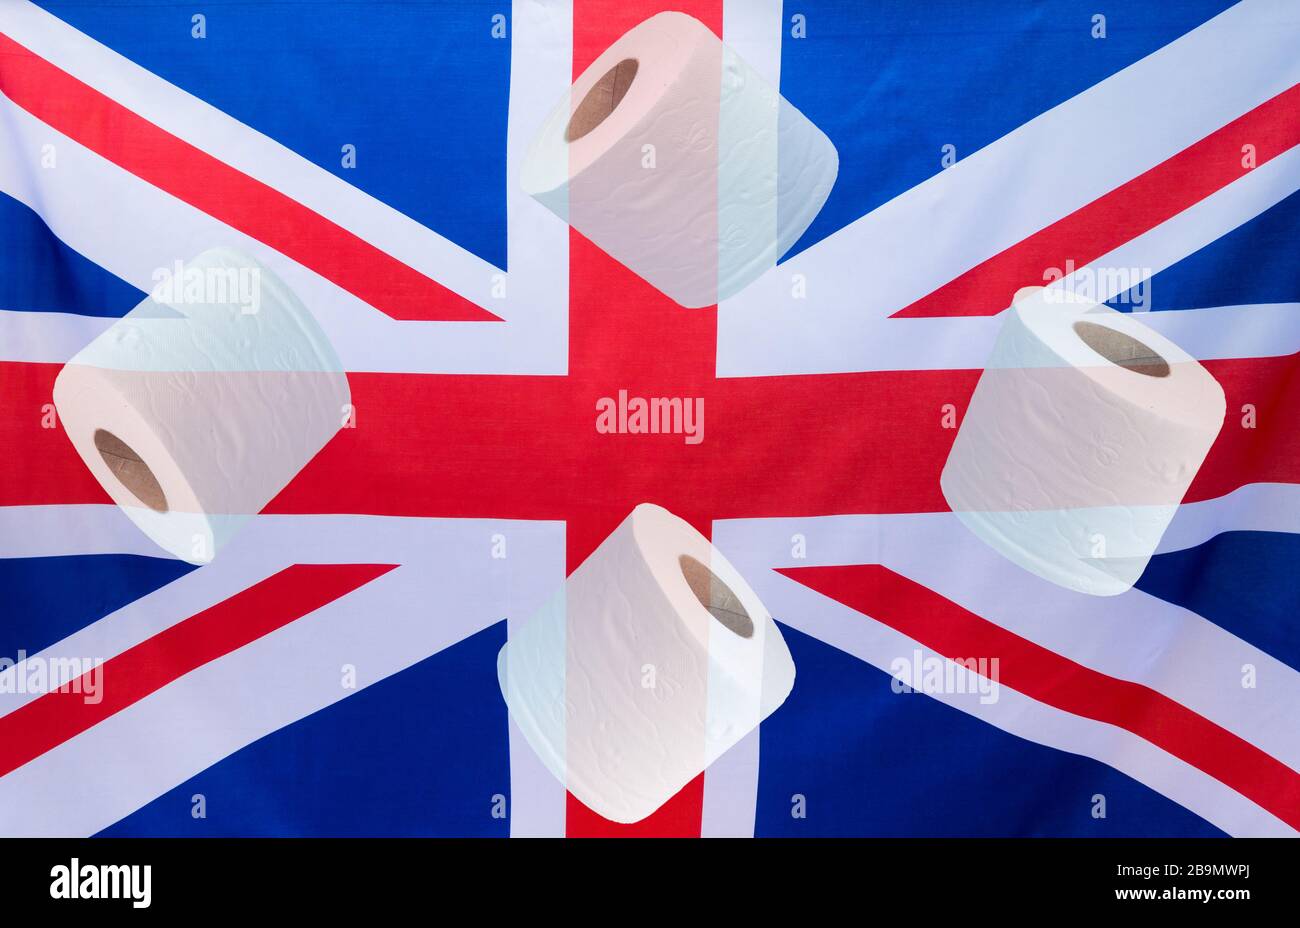 Die Flagge der Union JacKj/Union von Großbritannien mit sich überlappenden toilettenrollen. Coronavirus Panic Kaufkonzept Stockfoto